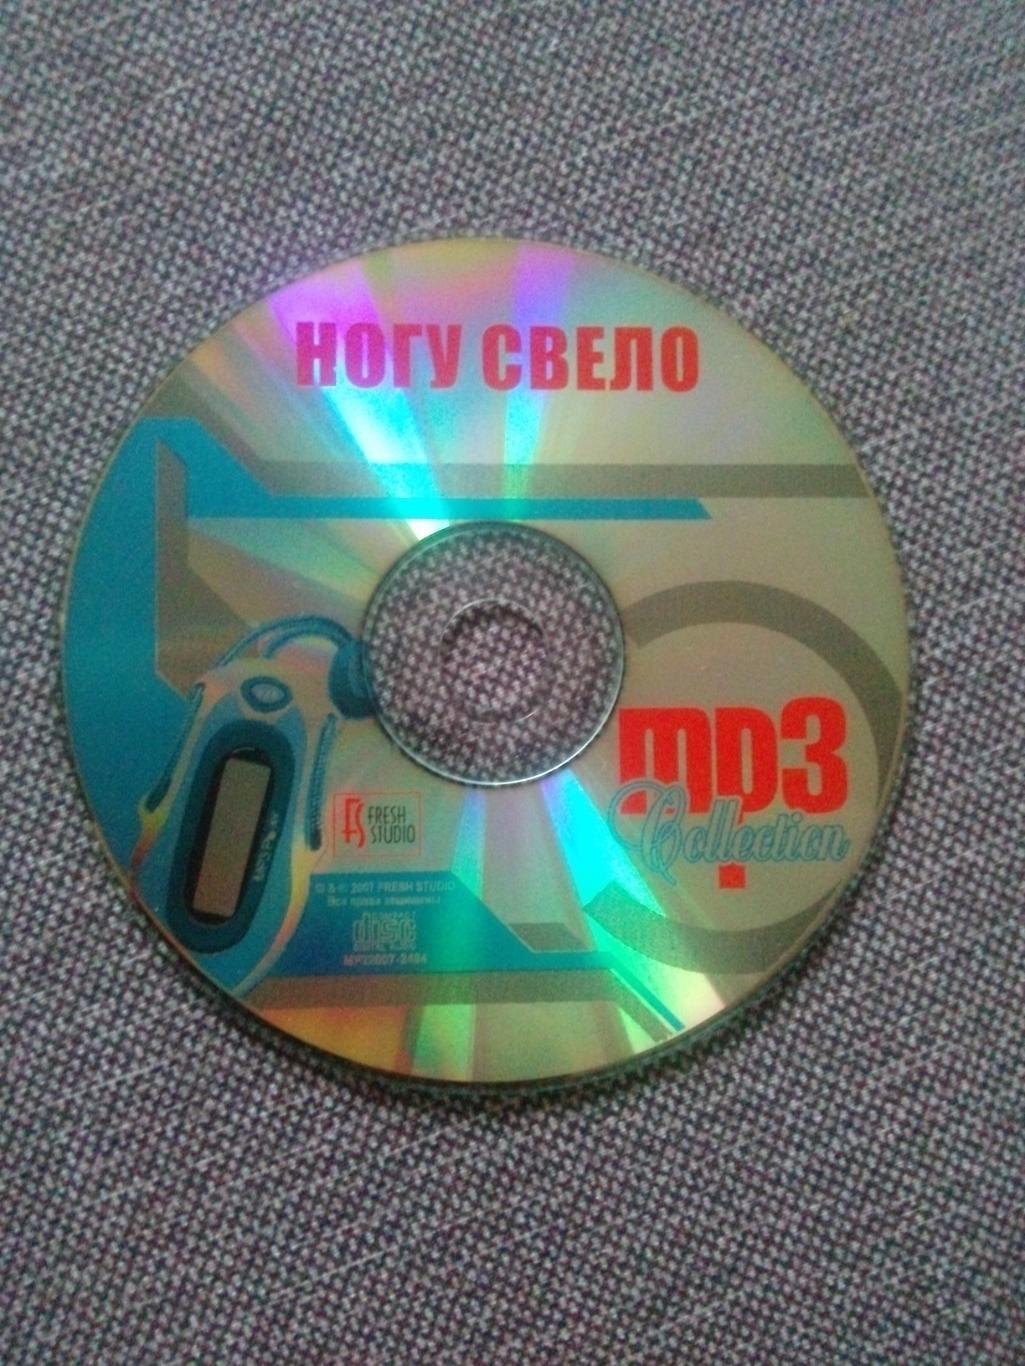 MP - 3 CD диск : группаНогу свело1991 - 2005 гг. 11 альбомов Рок - музыка 5